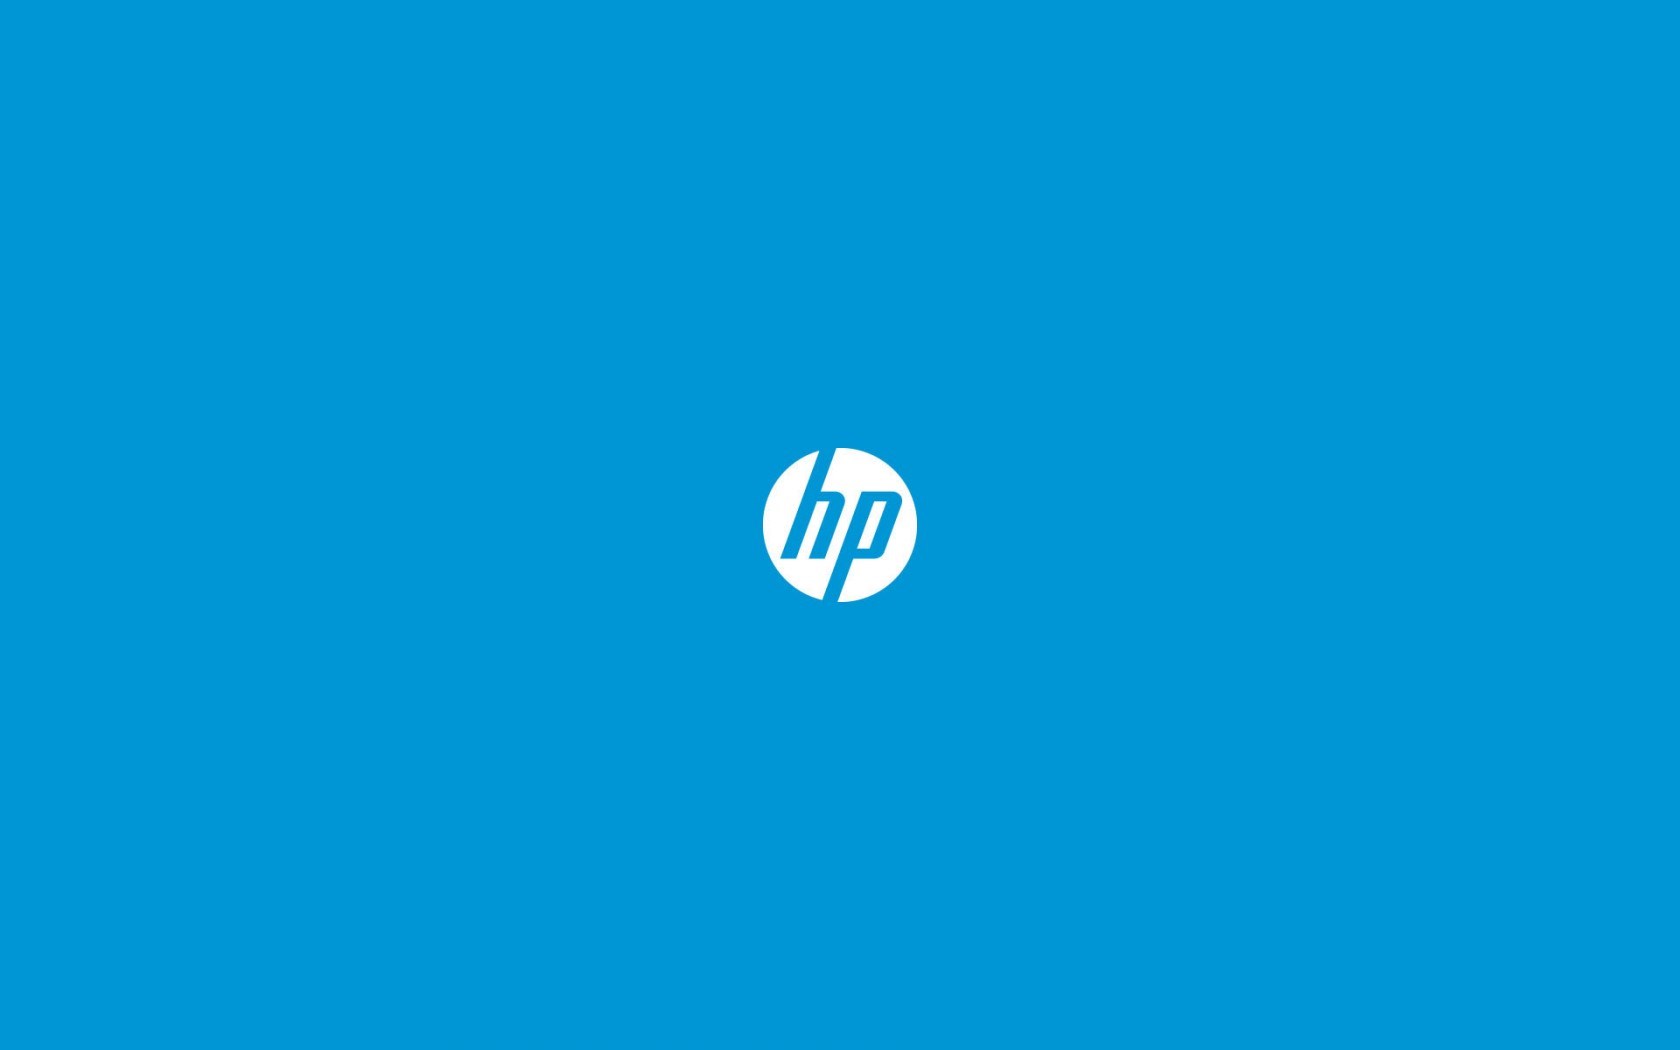 Hewlett-Packard HD wallpapers, Desktop wallpaper - most viewed